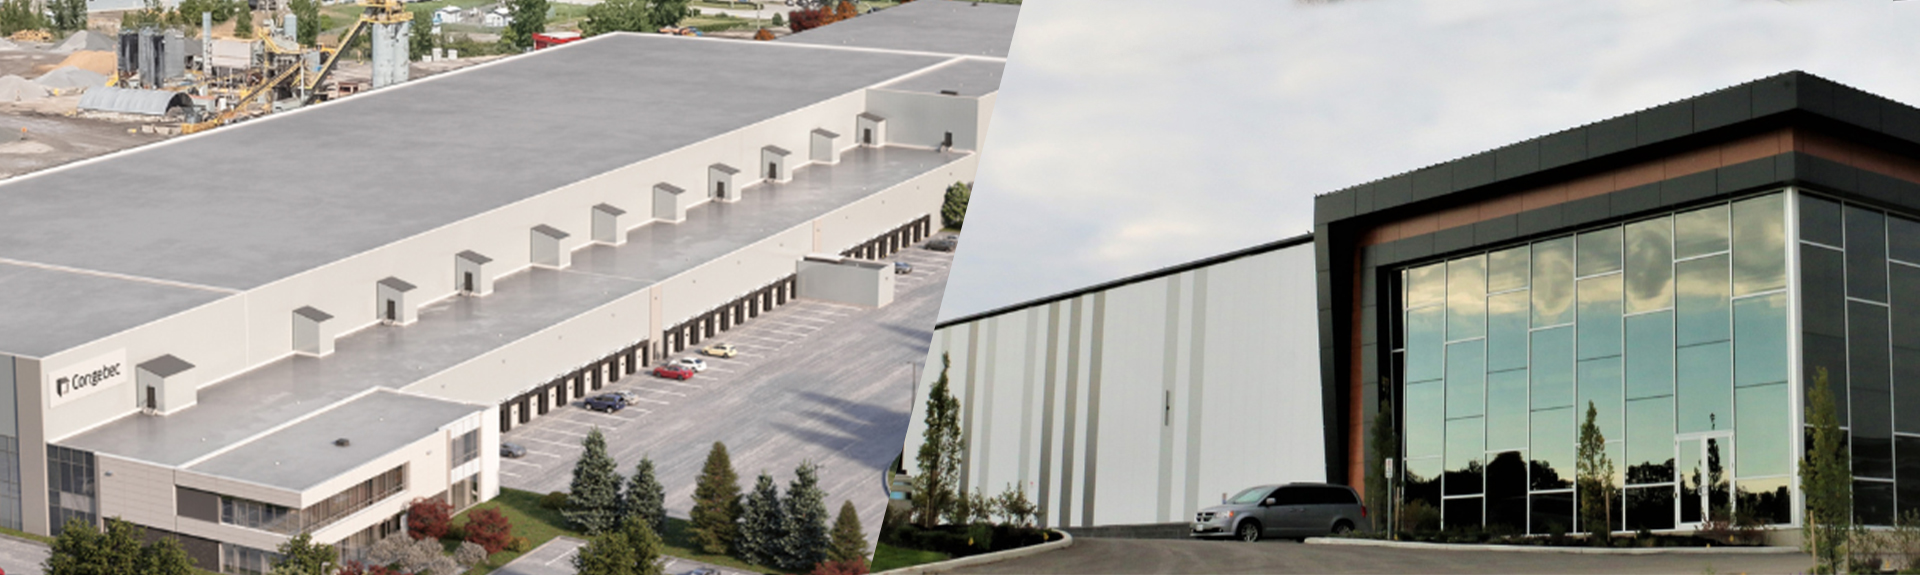 Exterior shots of industrial properties in Mascouche, Quebec, and Woodstock, Ontario